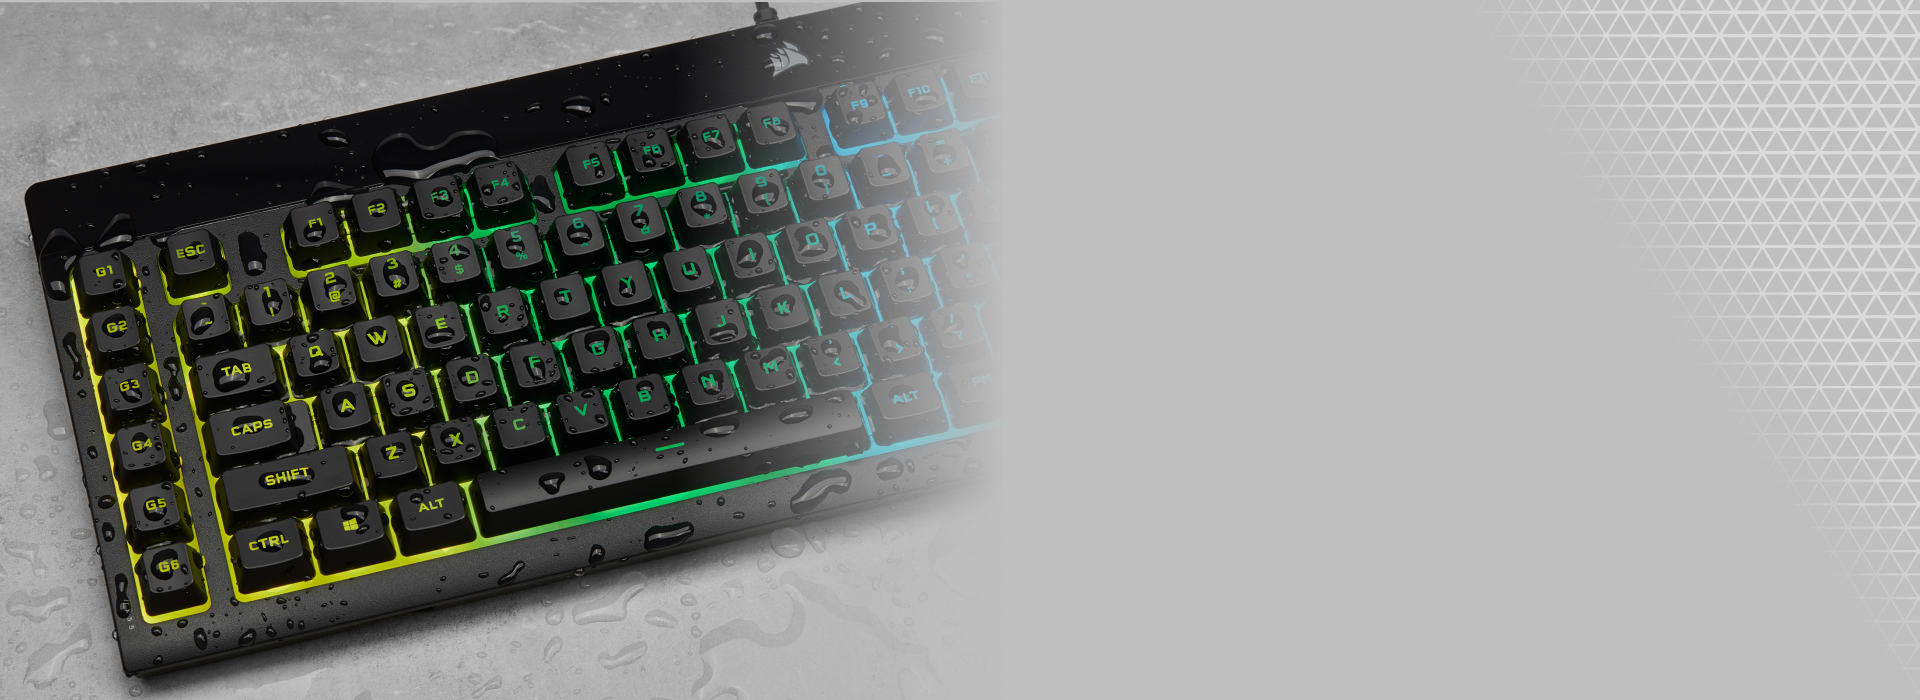 Corsair K55 RGB Gaming Keyboard - Office Depot